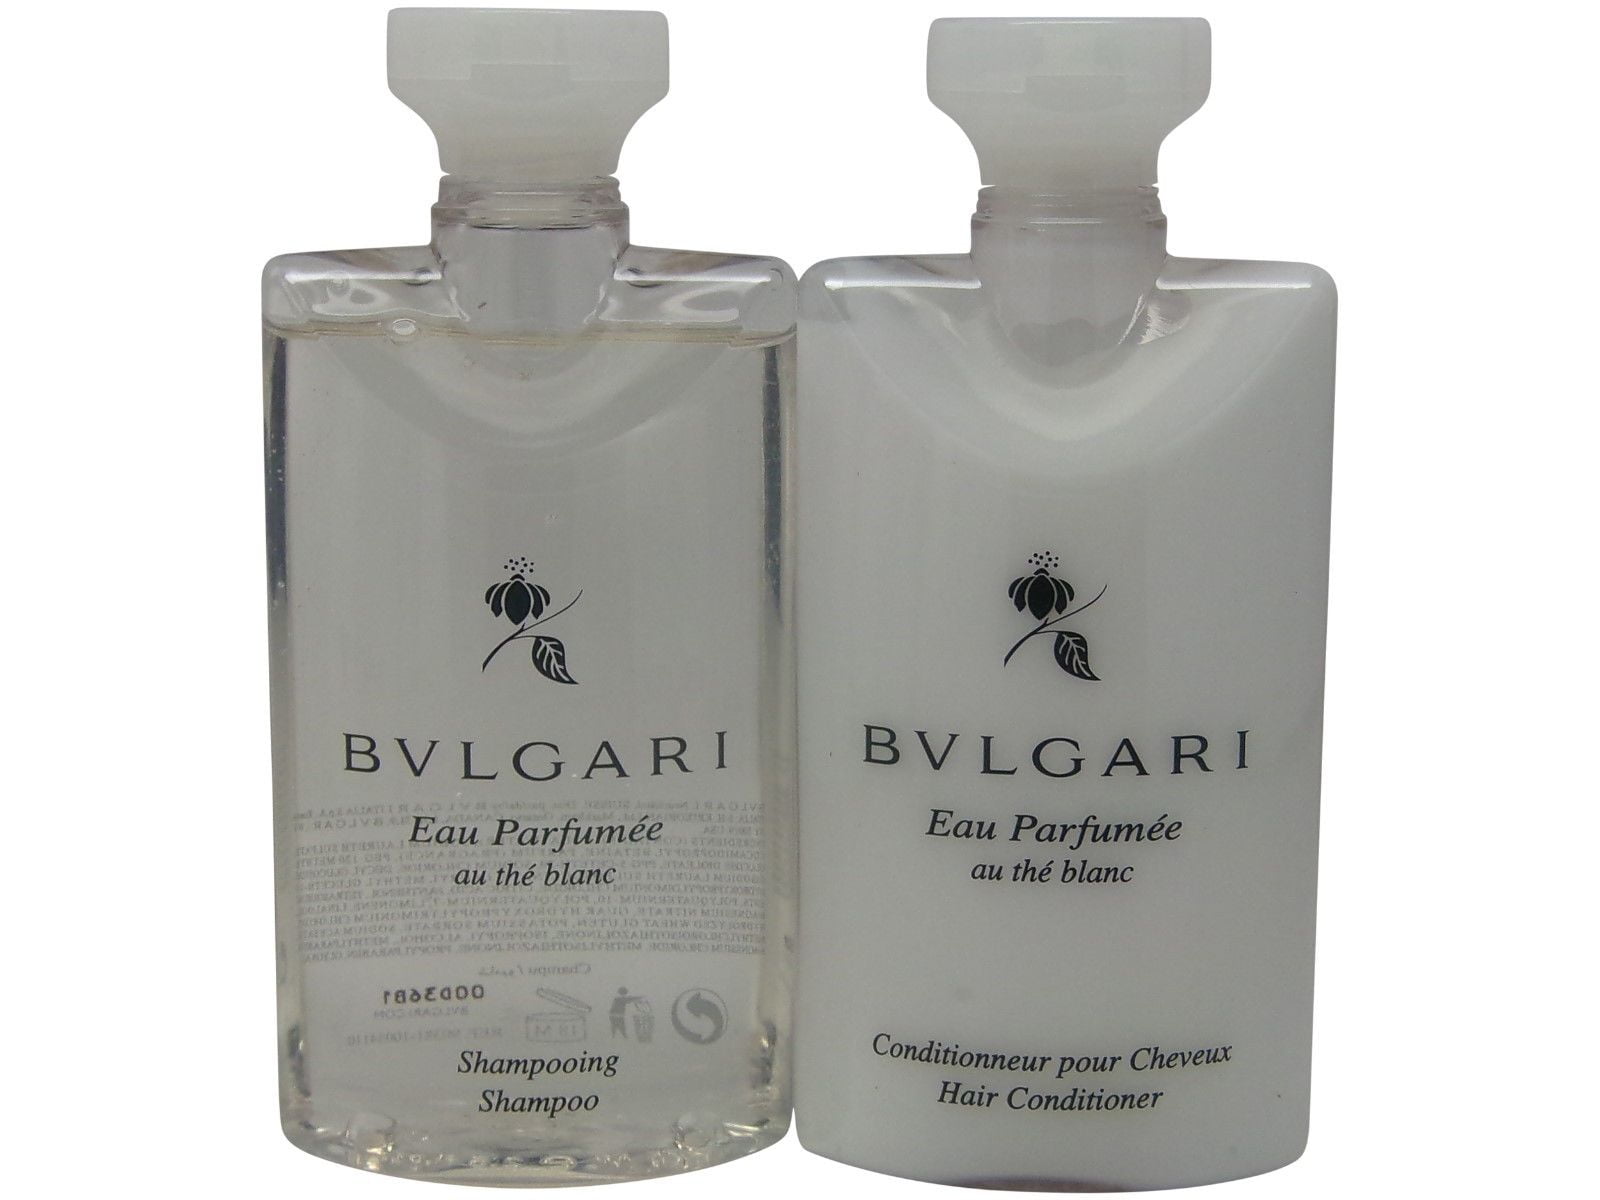 bvlgari shampoo and conditioner